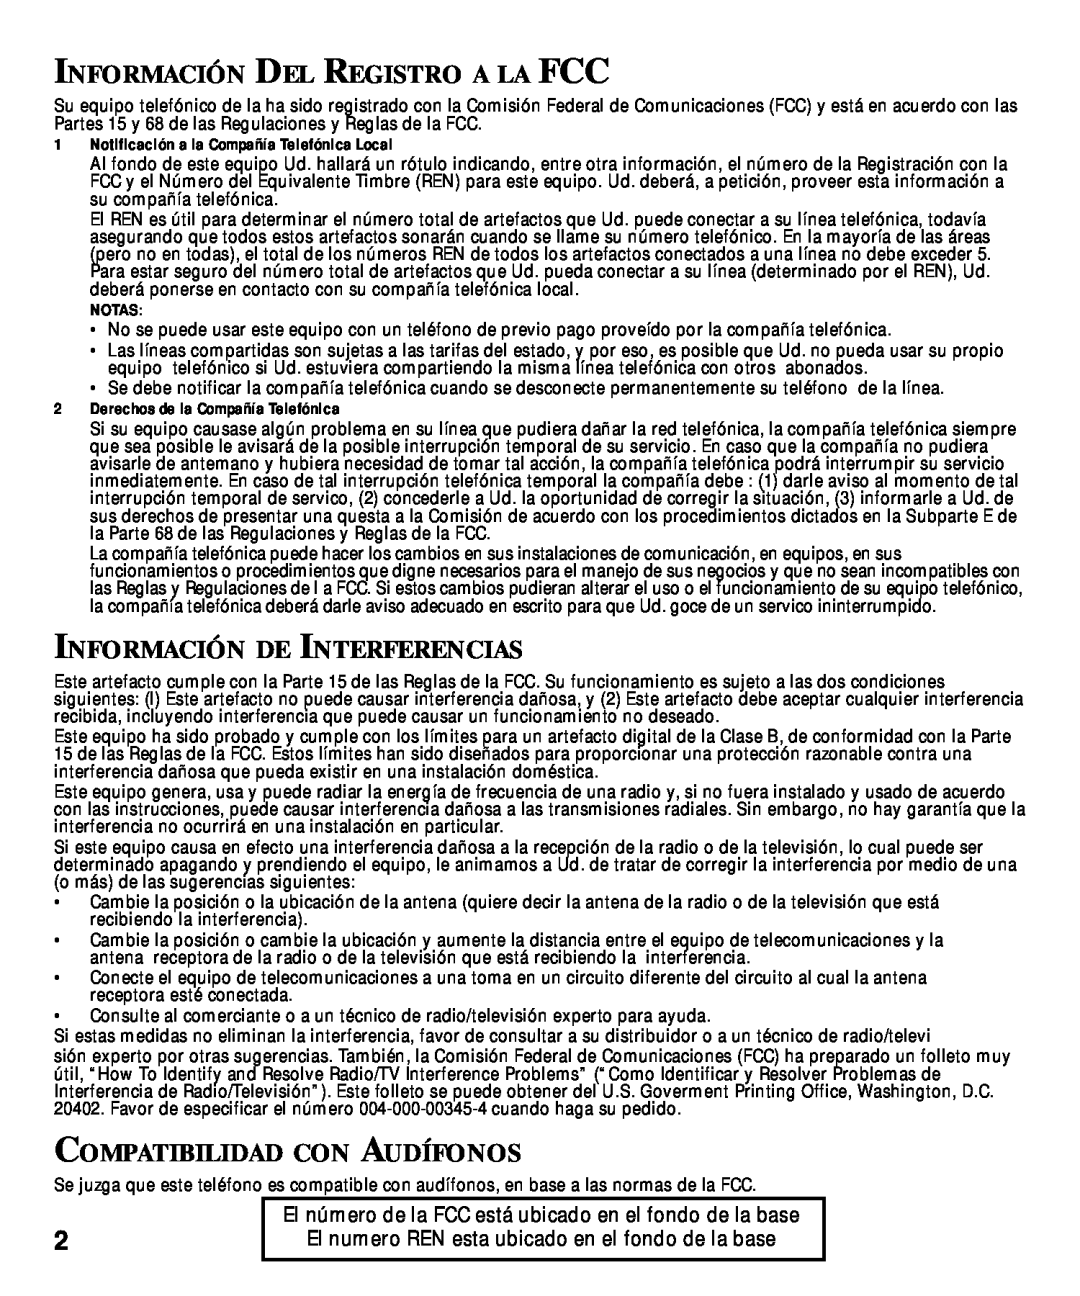 GE 29870 Series Información Del Registro A La Fcc, Información De Interferencias, Compatibilidad Con Audífonos, Notas 